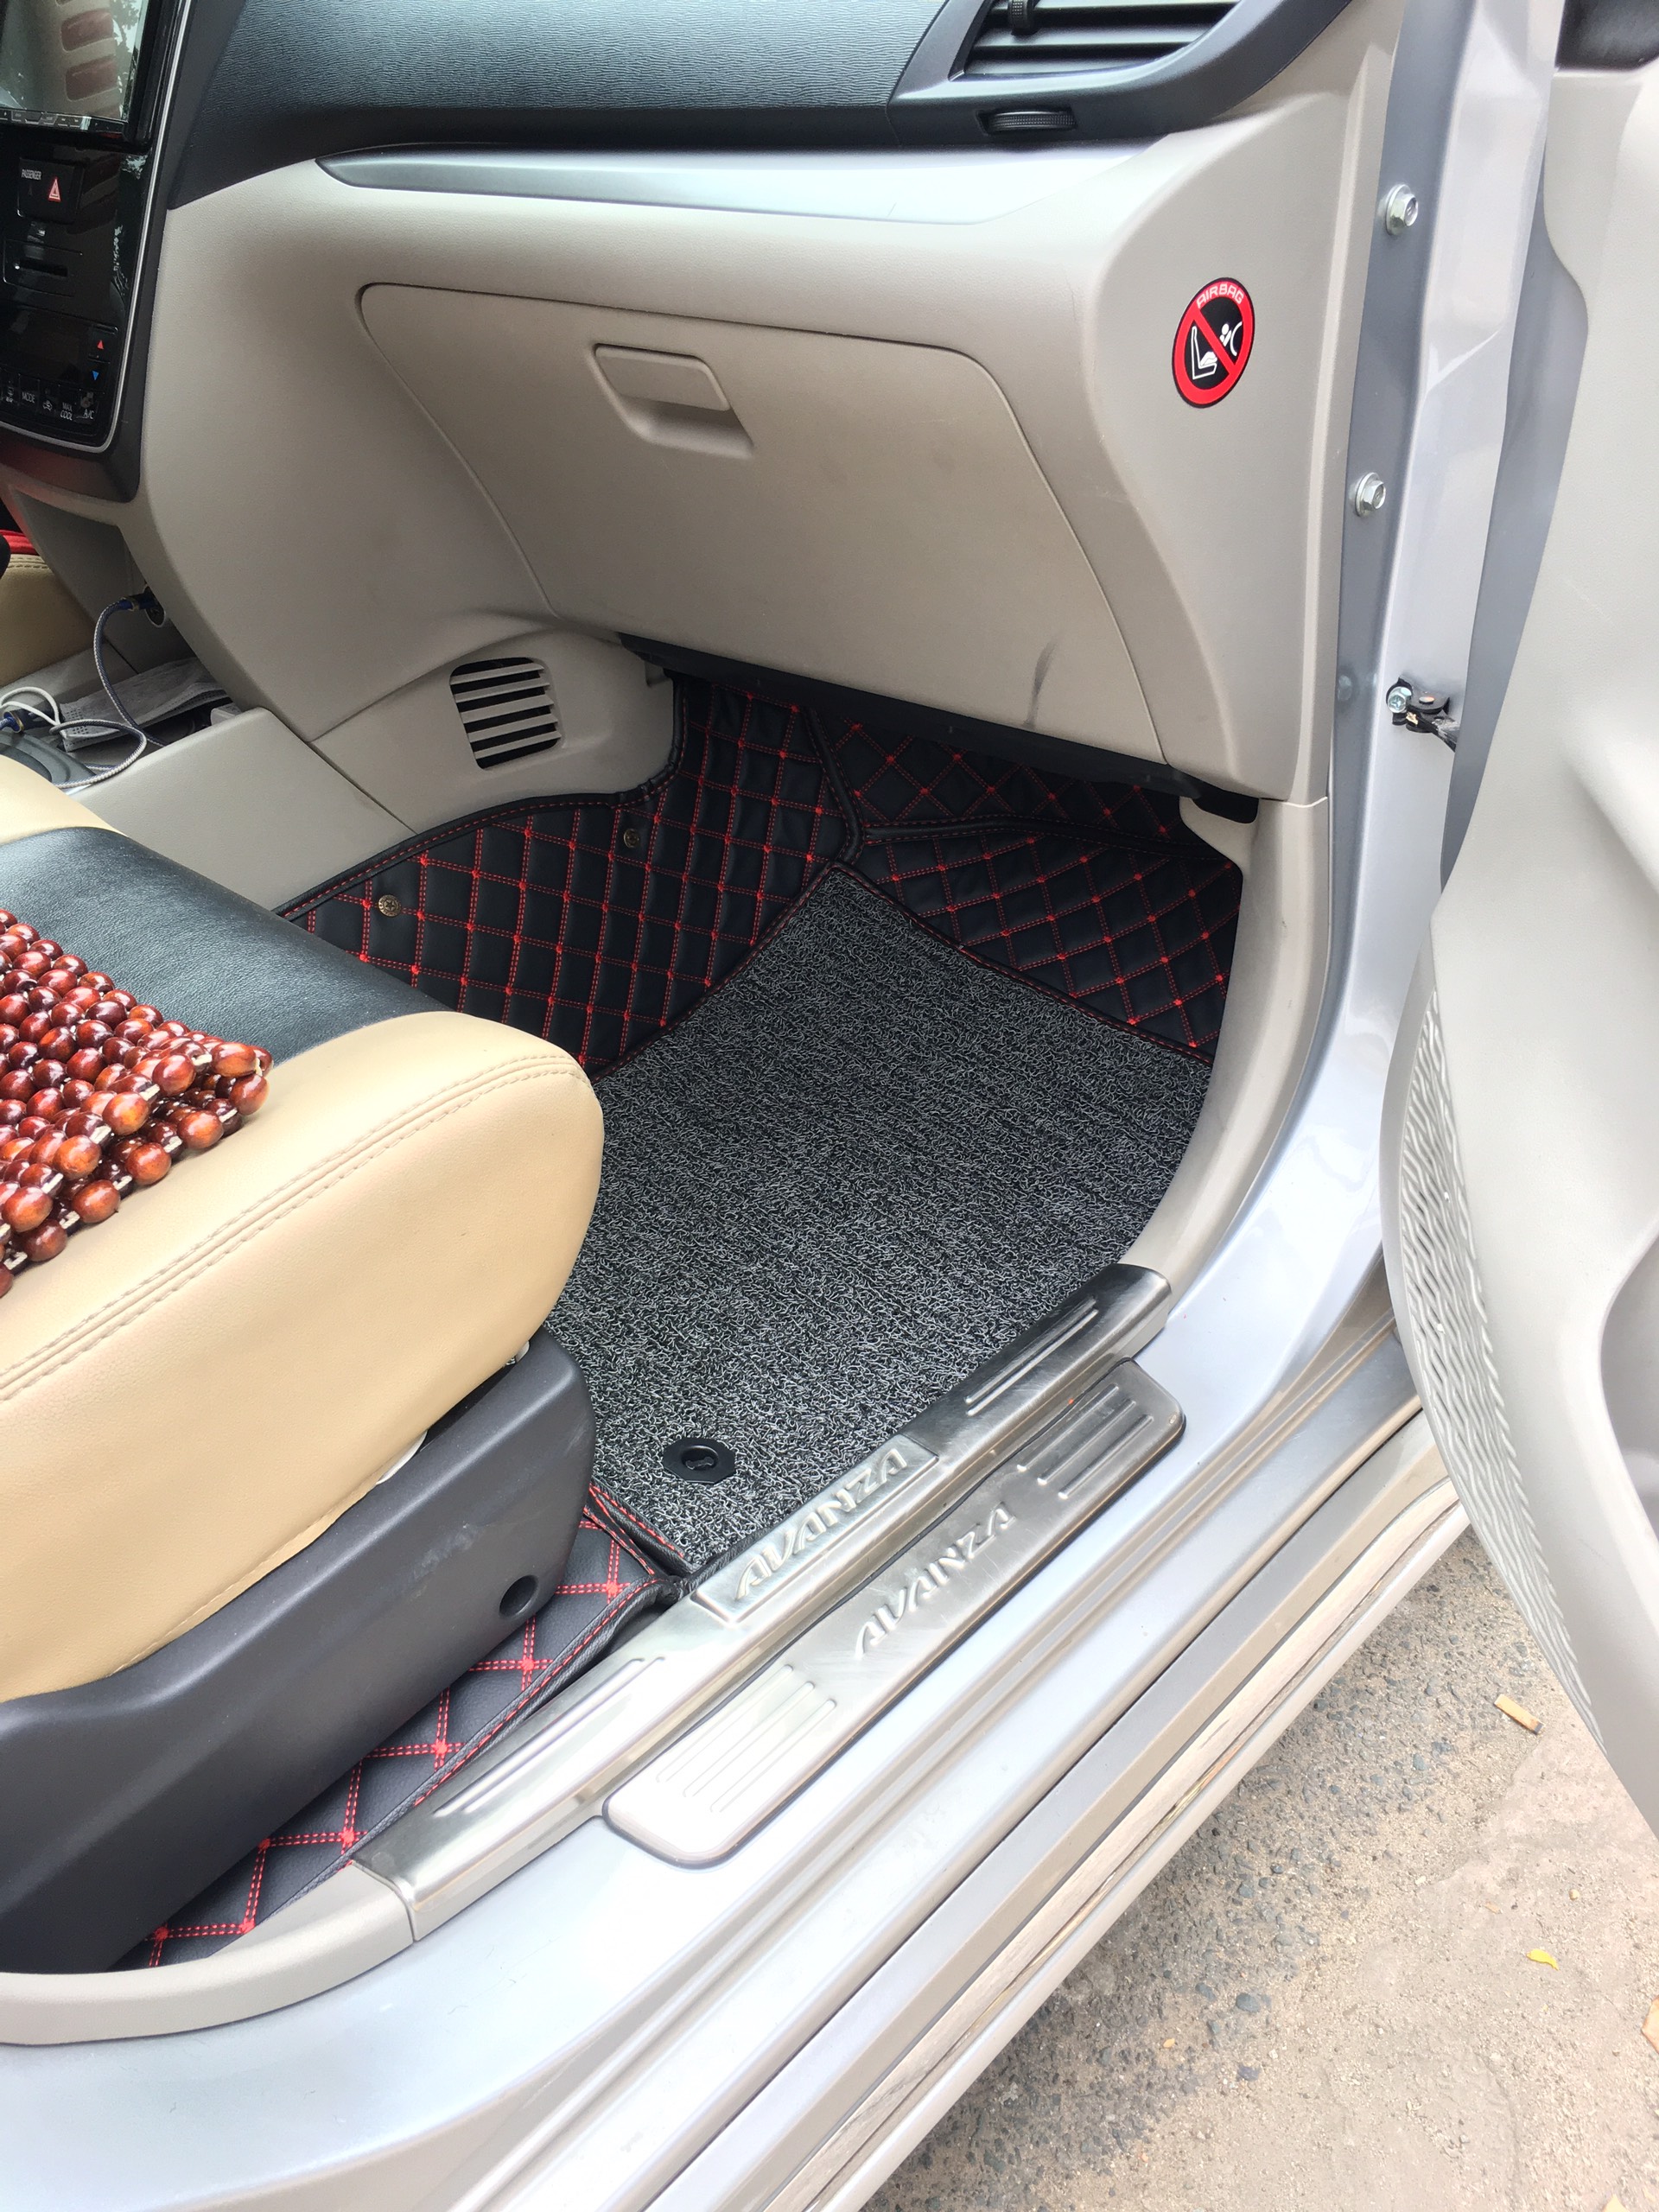 Thảm sàn ô tô 6D dành cho xe Toyota Avanza2019 da Thường màu T2.2 + R3 hình ảnh thật chụp bằng điện thoại không chỉnh sửa có video hướng dẫn lắp đặt tại nhà